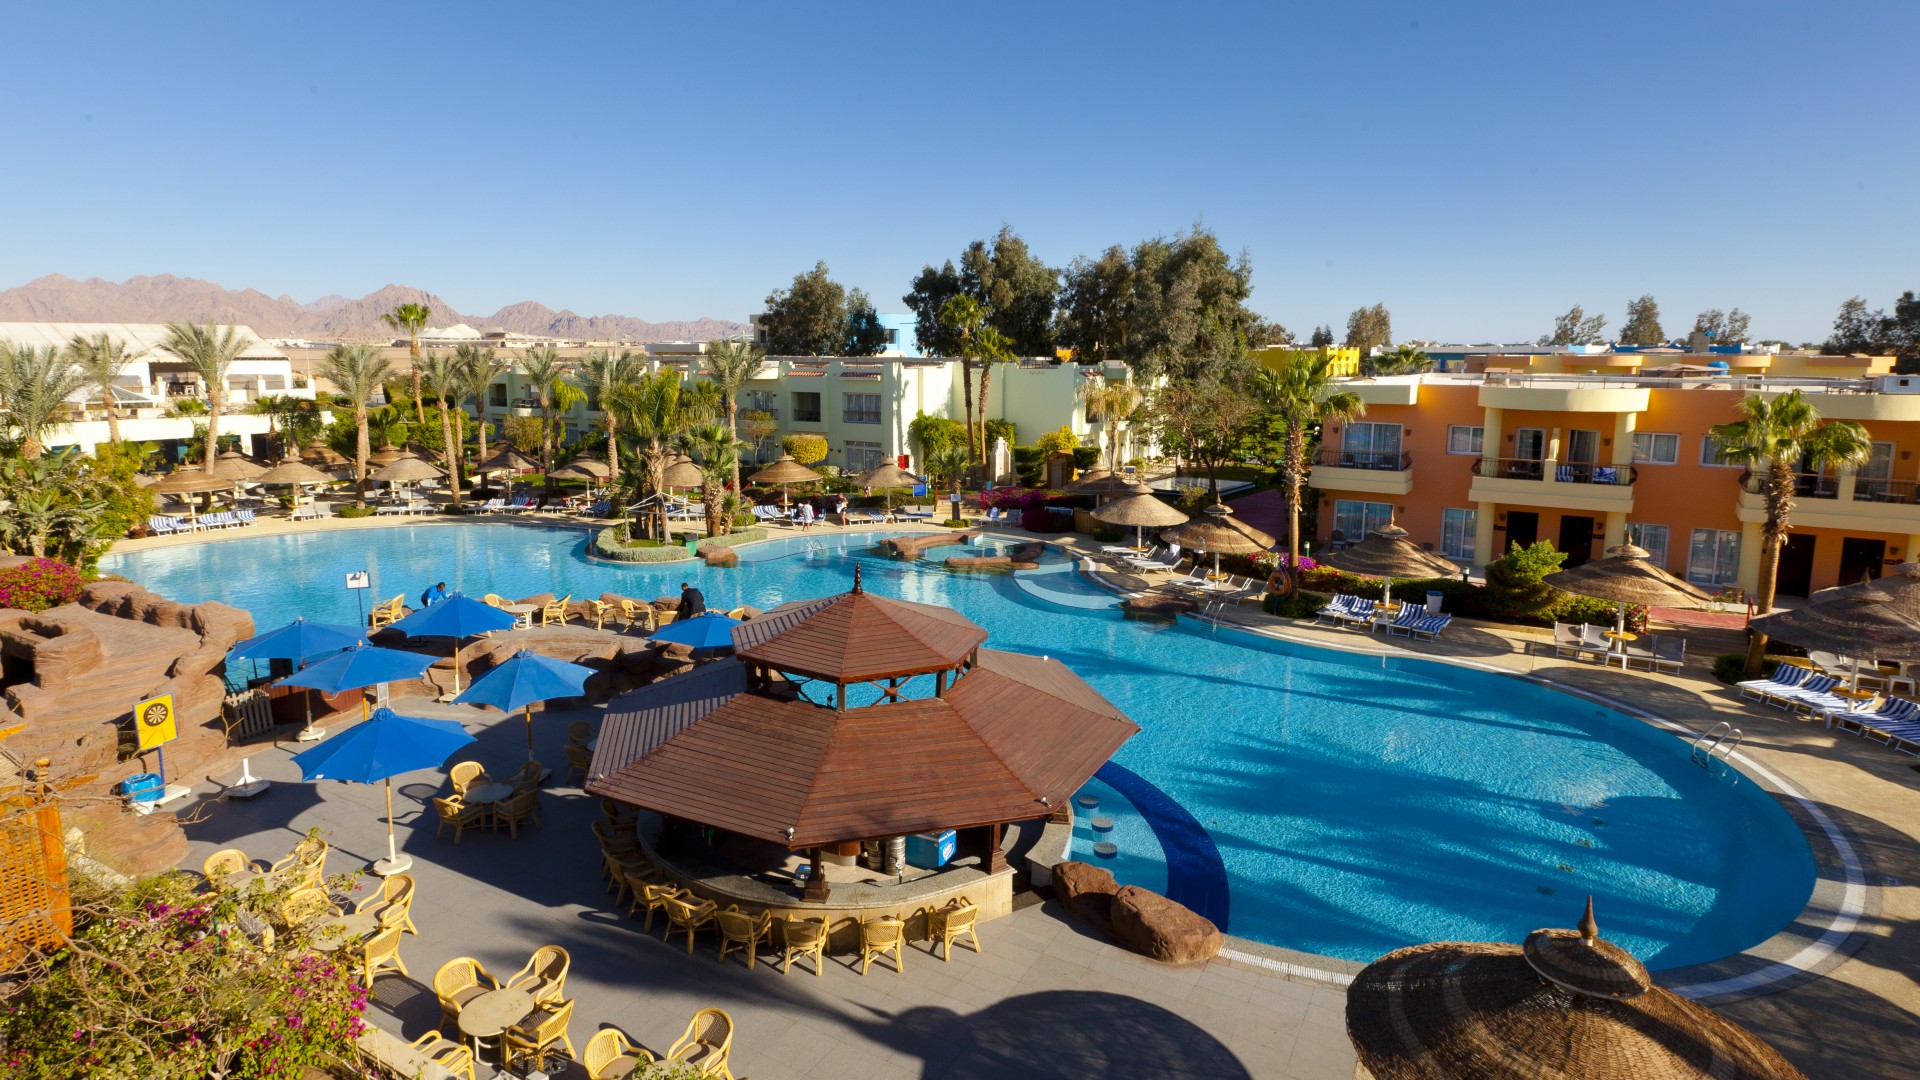 Savoy Sierra Sharm El Sheikh Hotel, Egypt, Best Hotels of 2017, tourism, travel, pool, resort, vacation (horizontal)